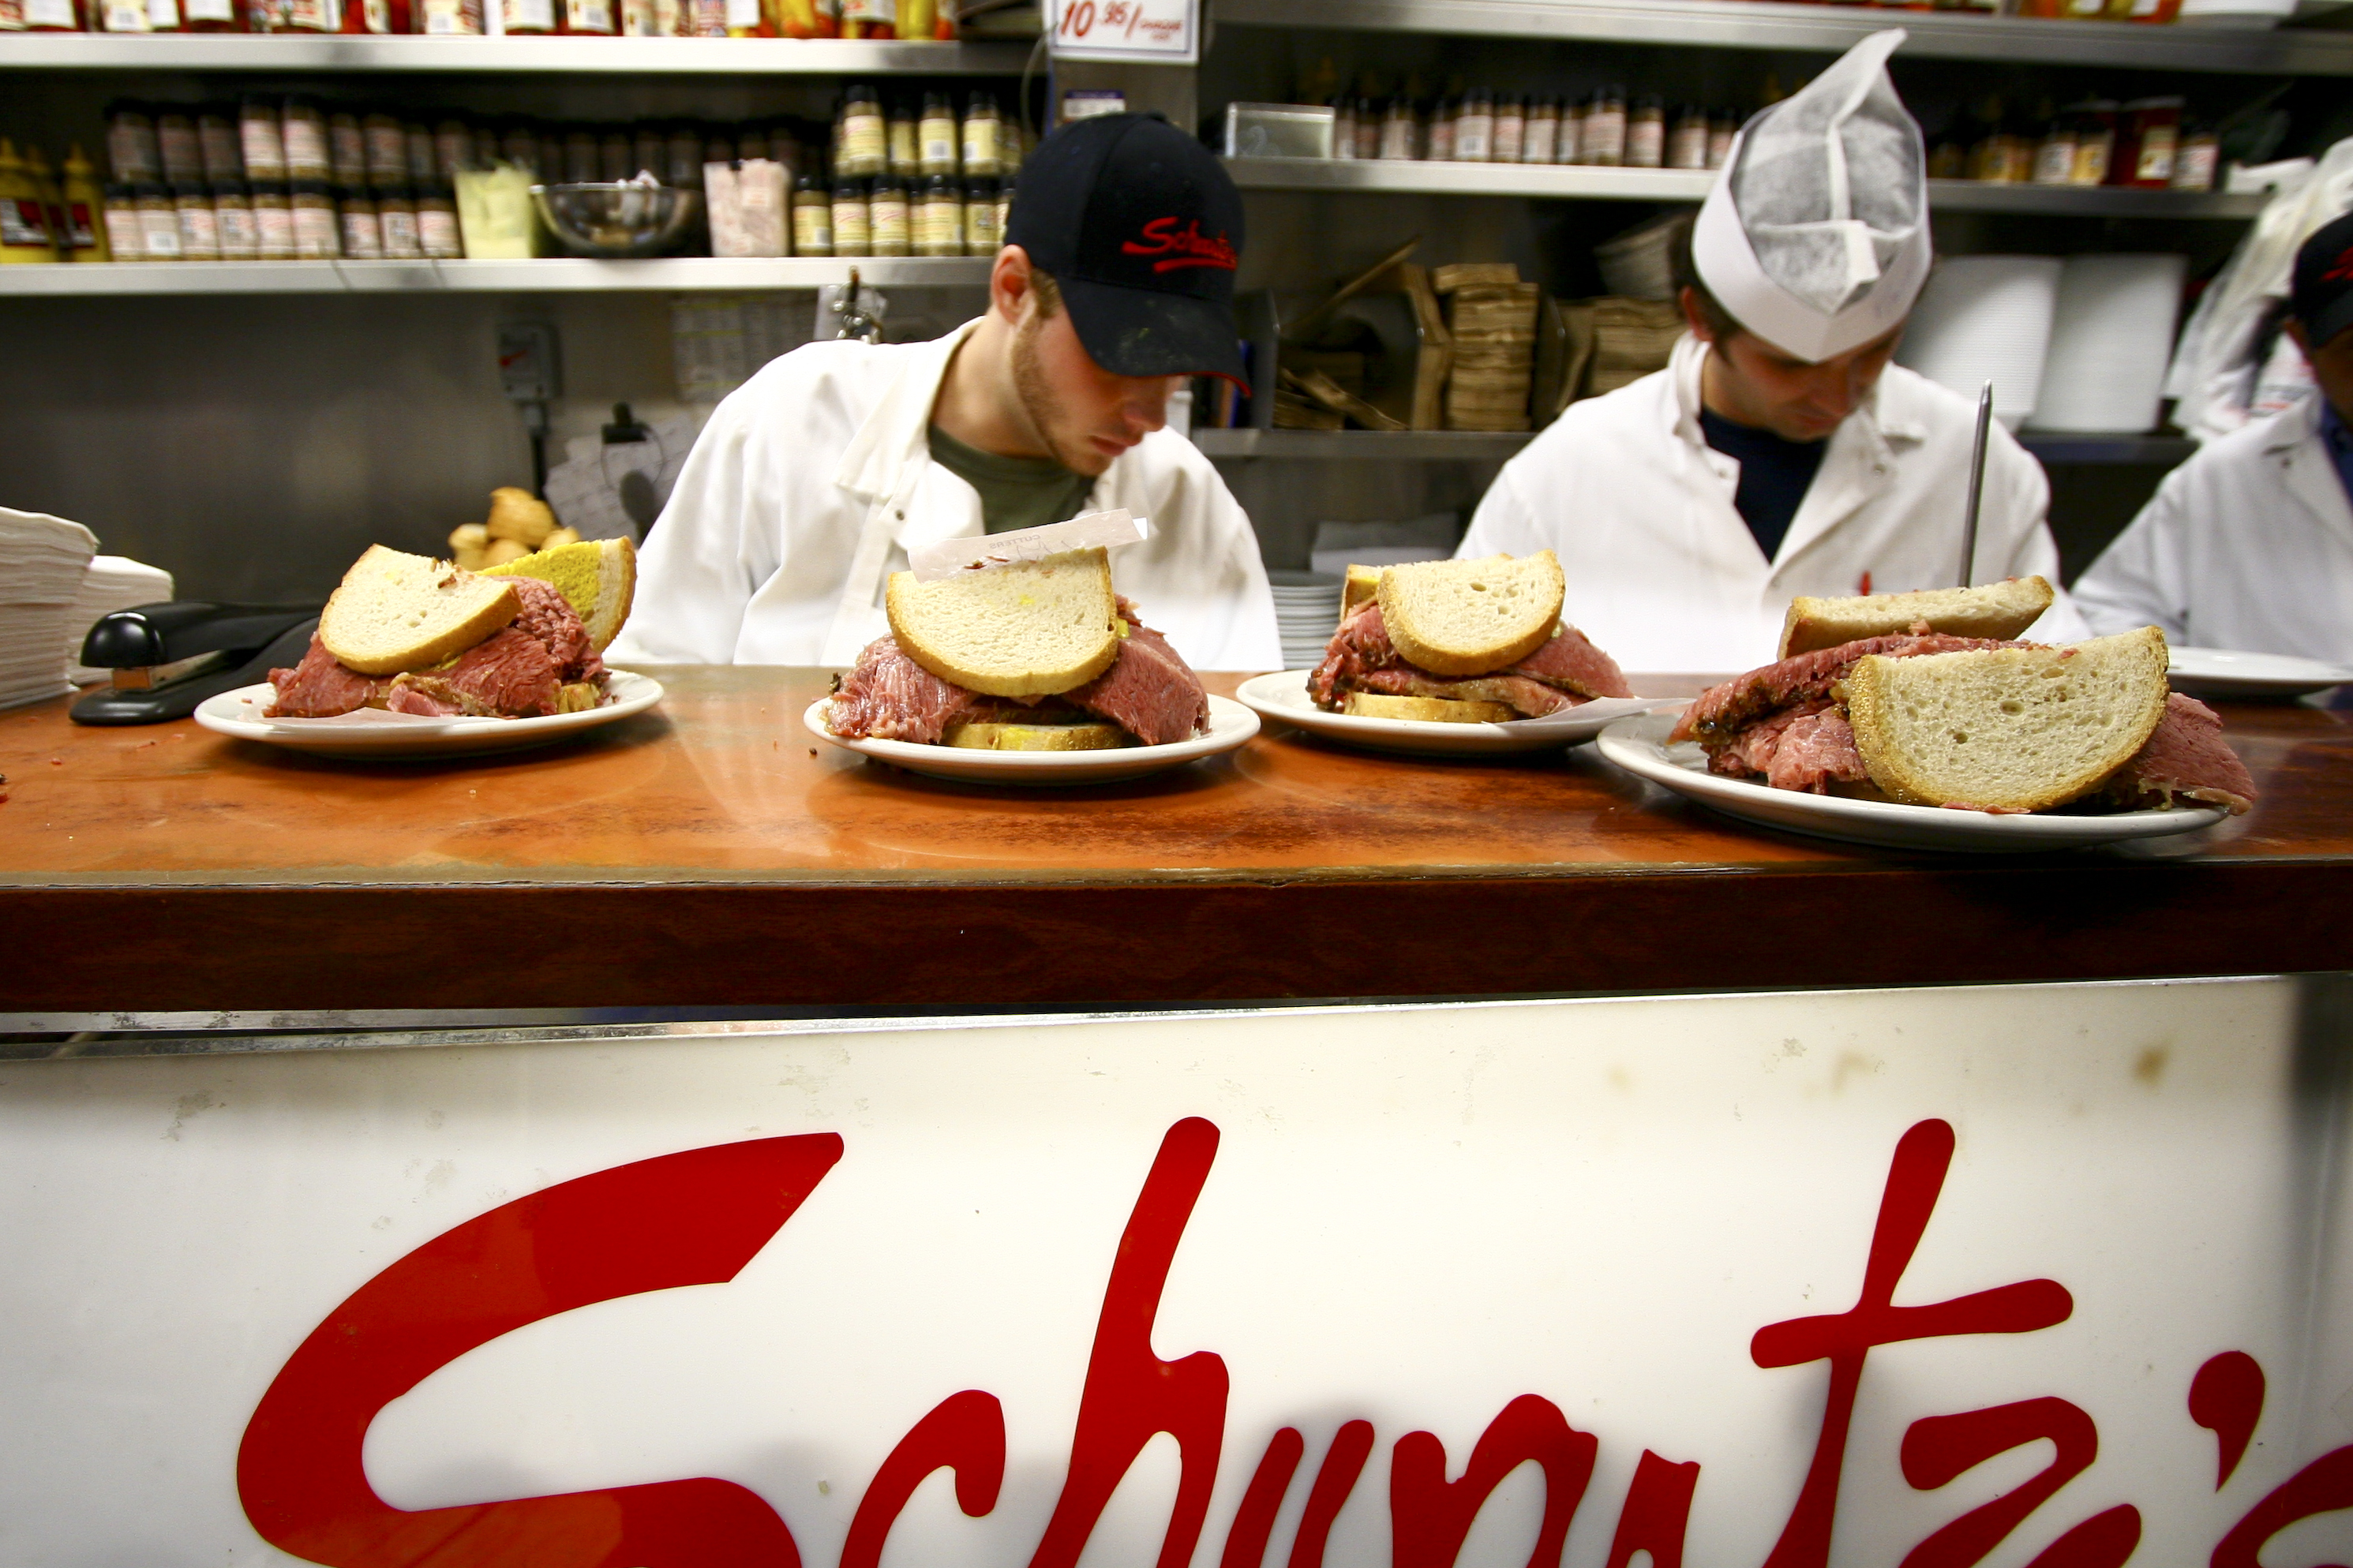 Schwartz's smocked meat sandwiches